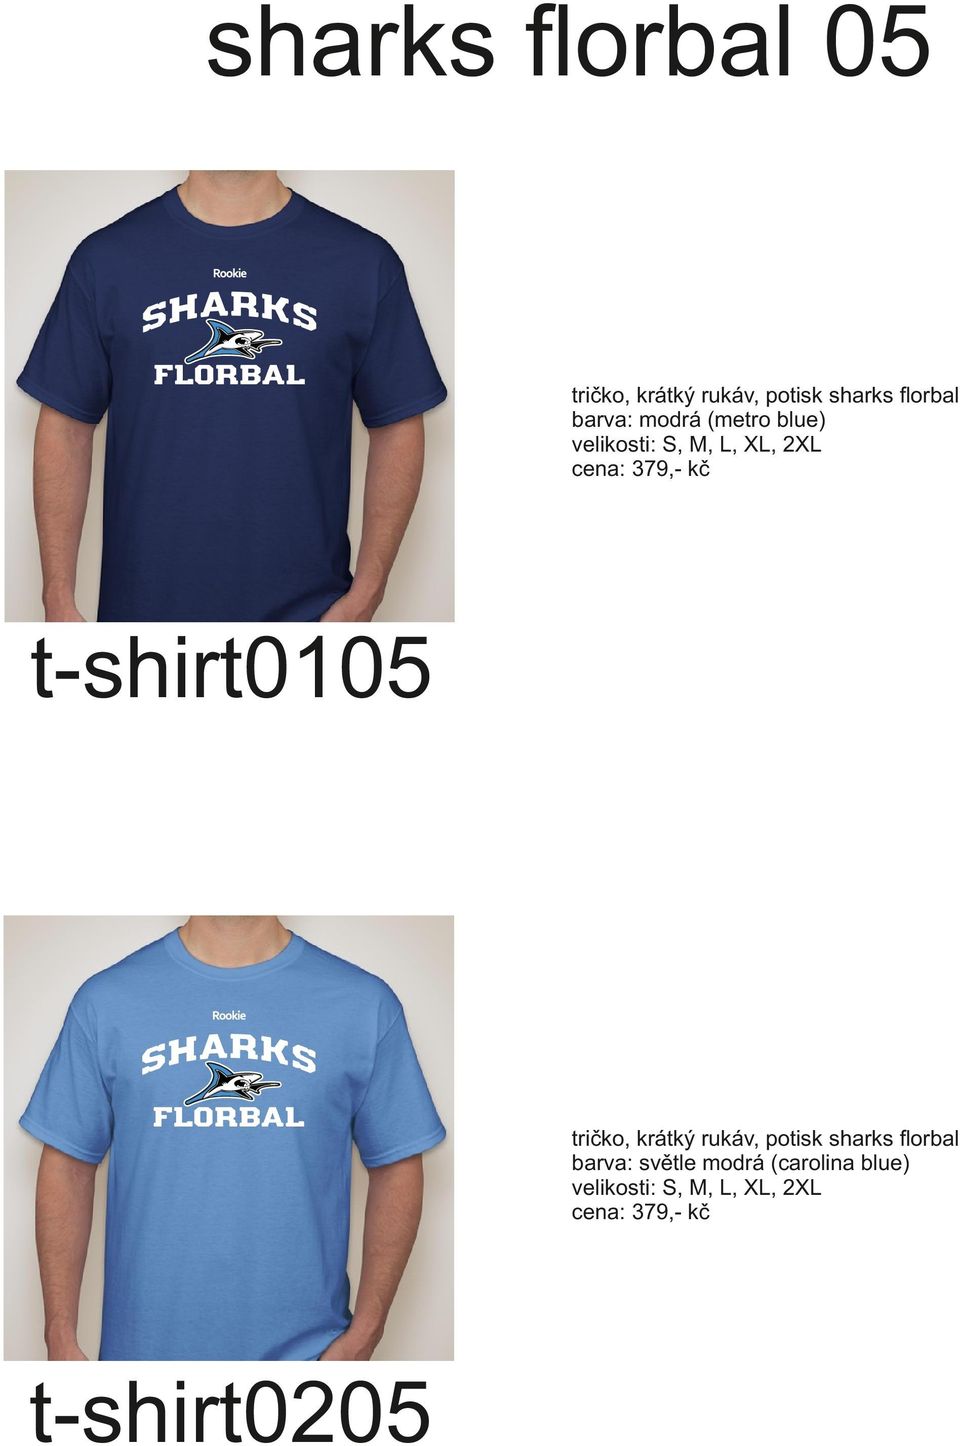 t-shirt0105 tričko, krátký rukáv, potisk sharks florbal